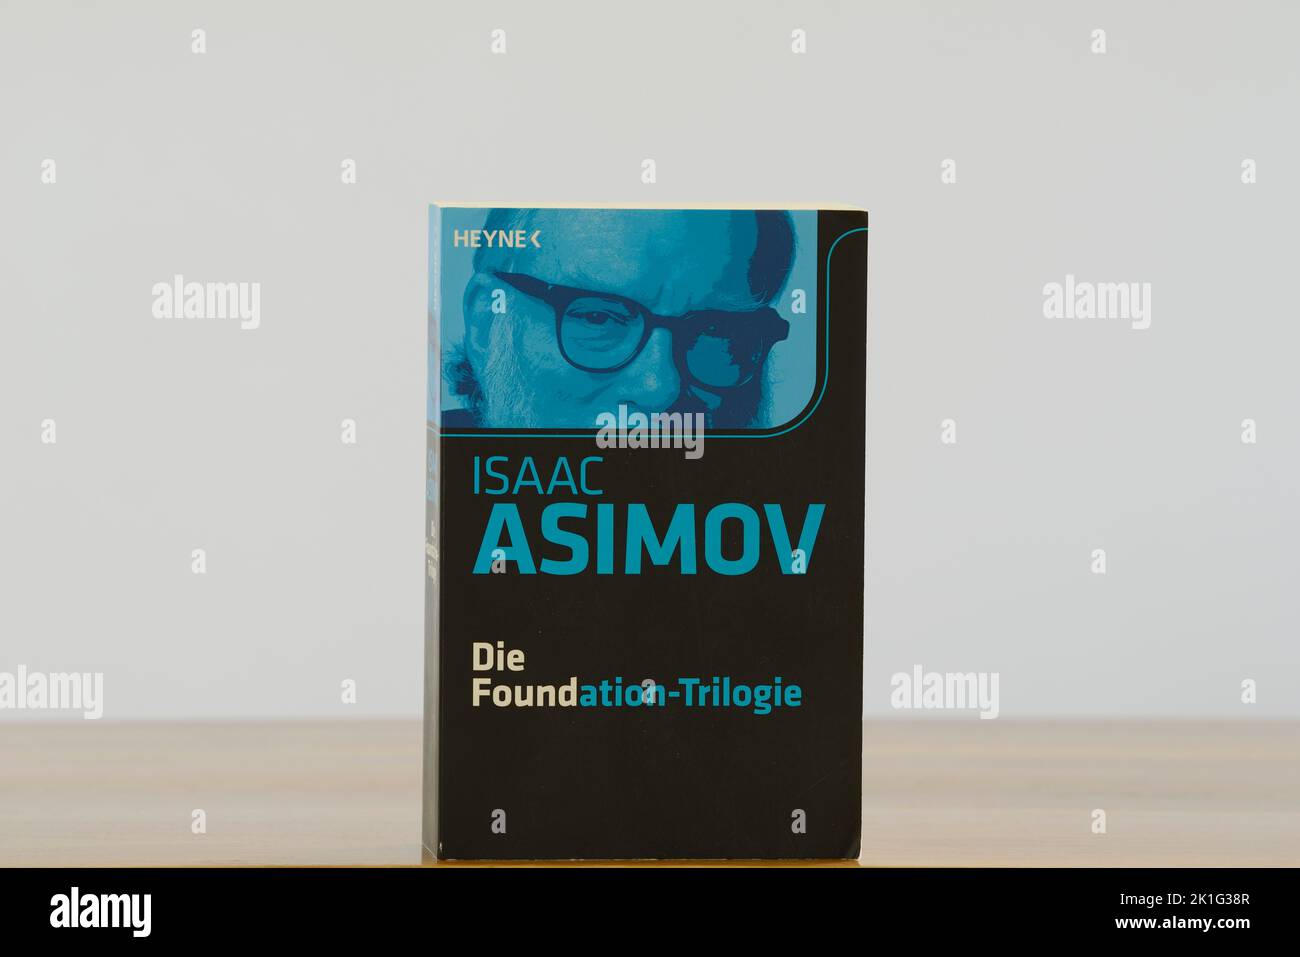 Isaac Asimov la trilogía de la Fundación. Tenga en cuenta que no tengo un comunicado de propiedad en esta imagen y puede ser utilizado sólo para editorial. No puede utilizar th Foto de stock